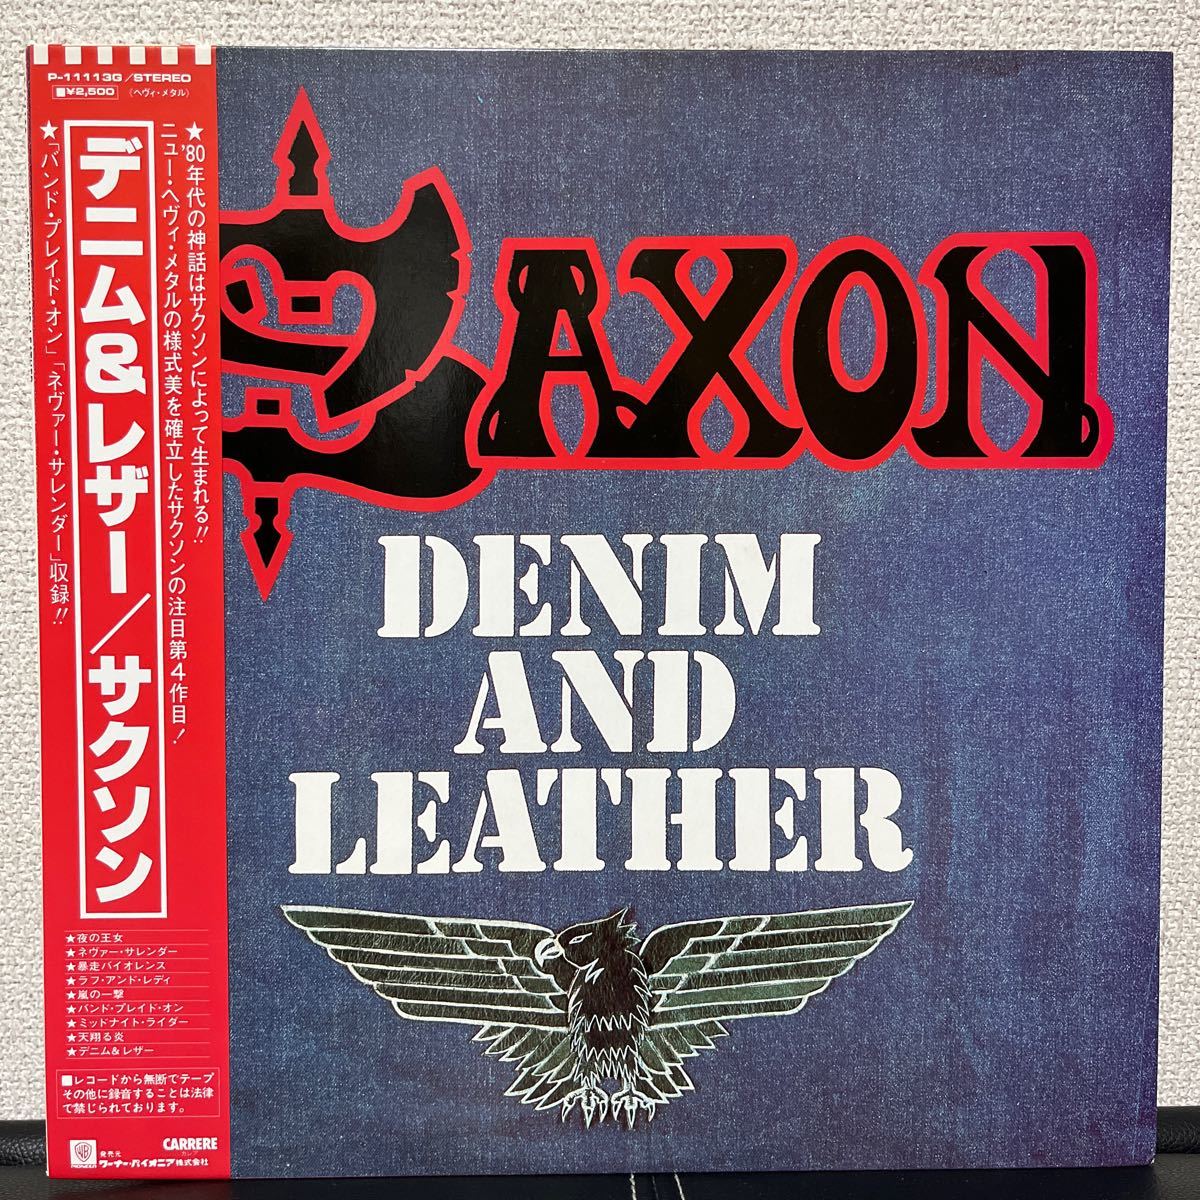 Saxon サクソン / Denim And Leather デニム &レザー cr640bf302402_画像1